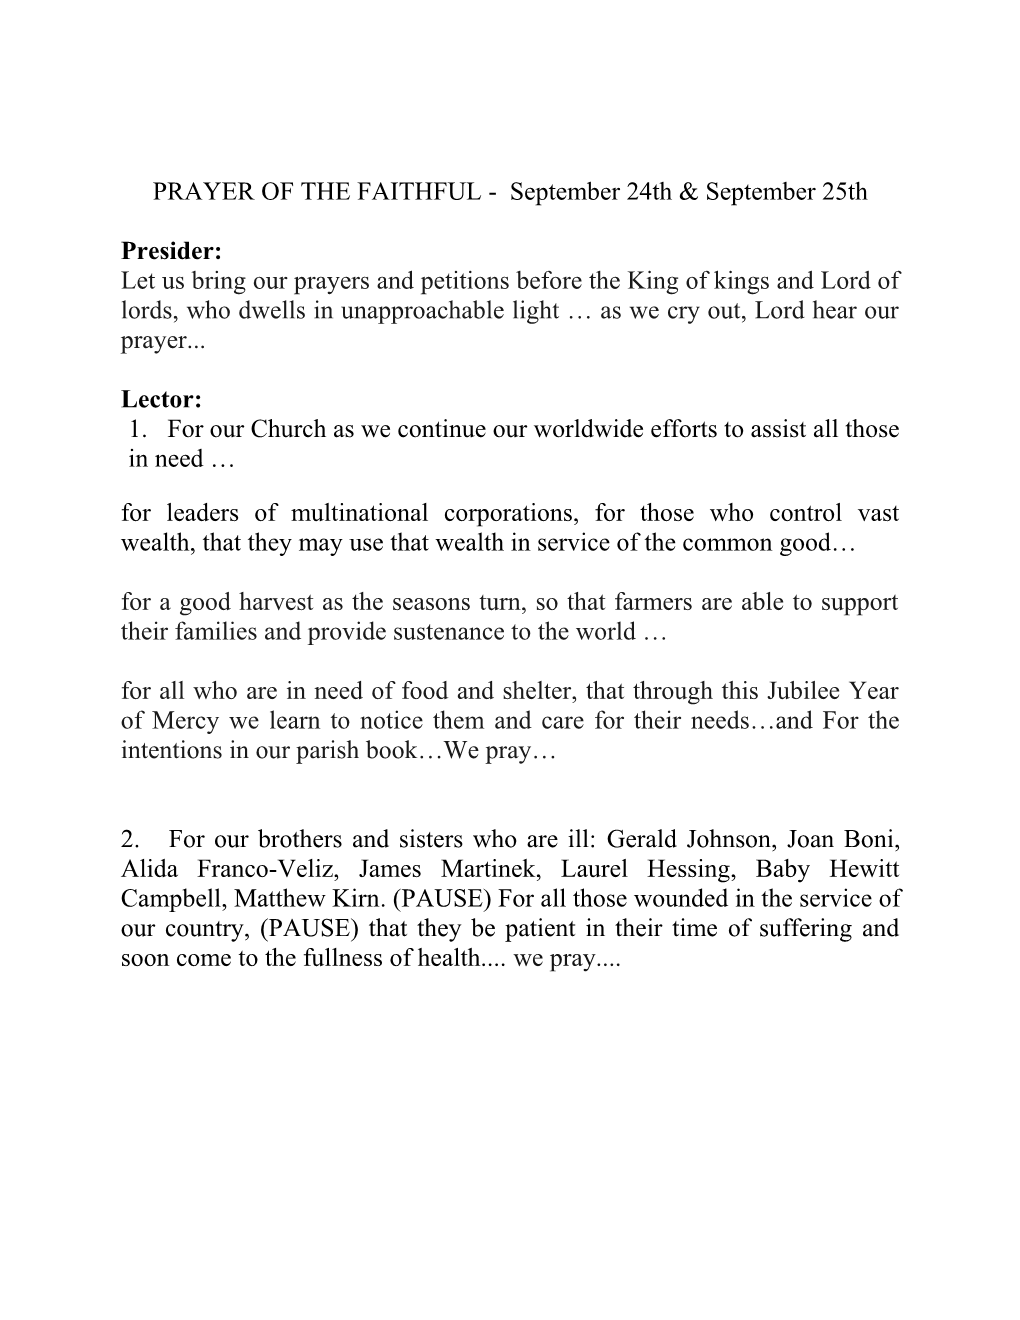 PRAYER of the FAITHFUL - September 24Th & September 25Th